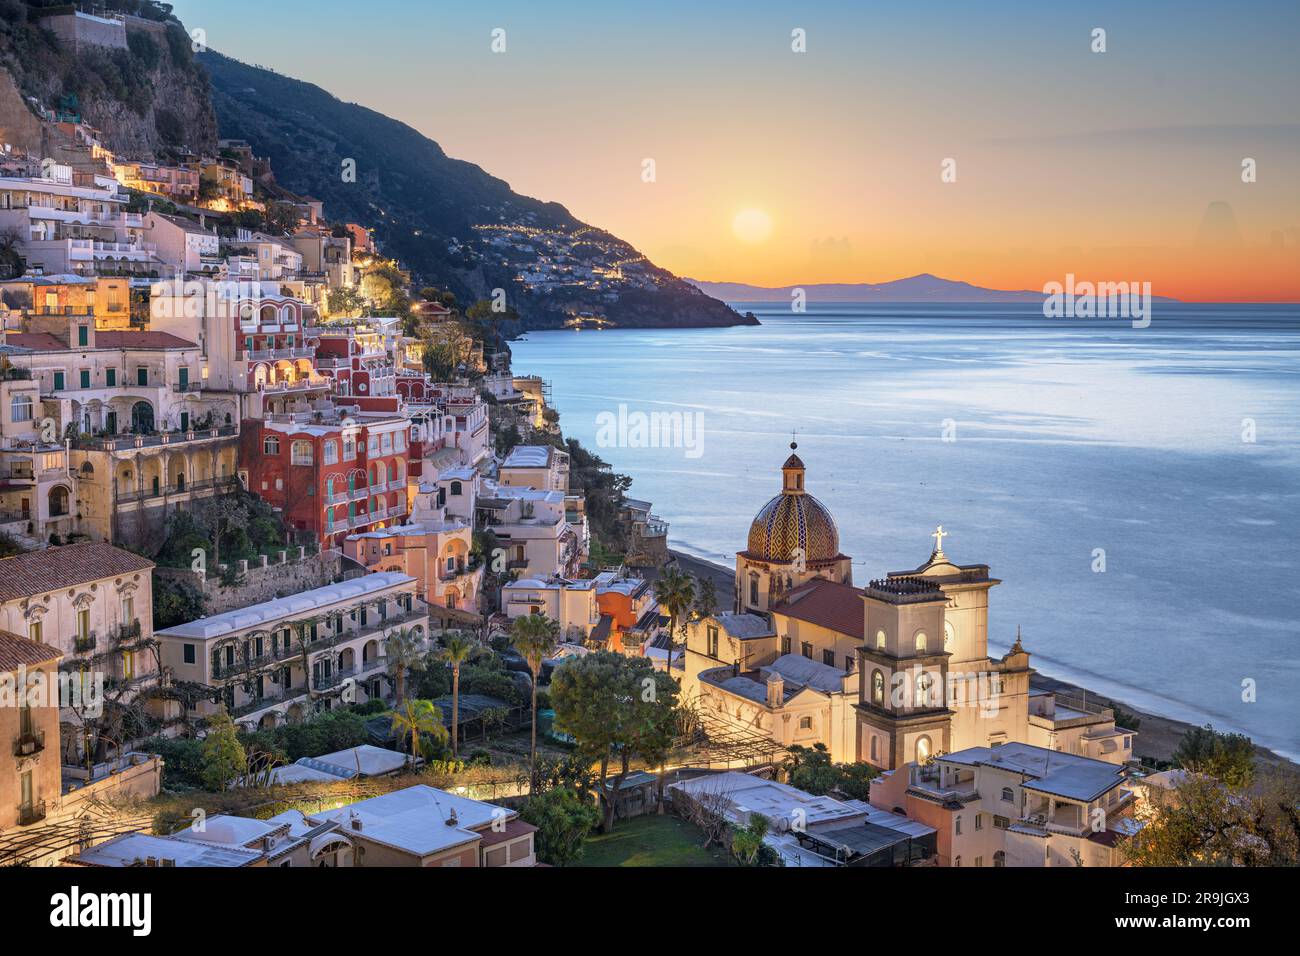 Positano, Italy along the Amalfi Coast at dusk. Stock Photo